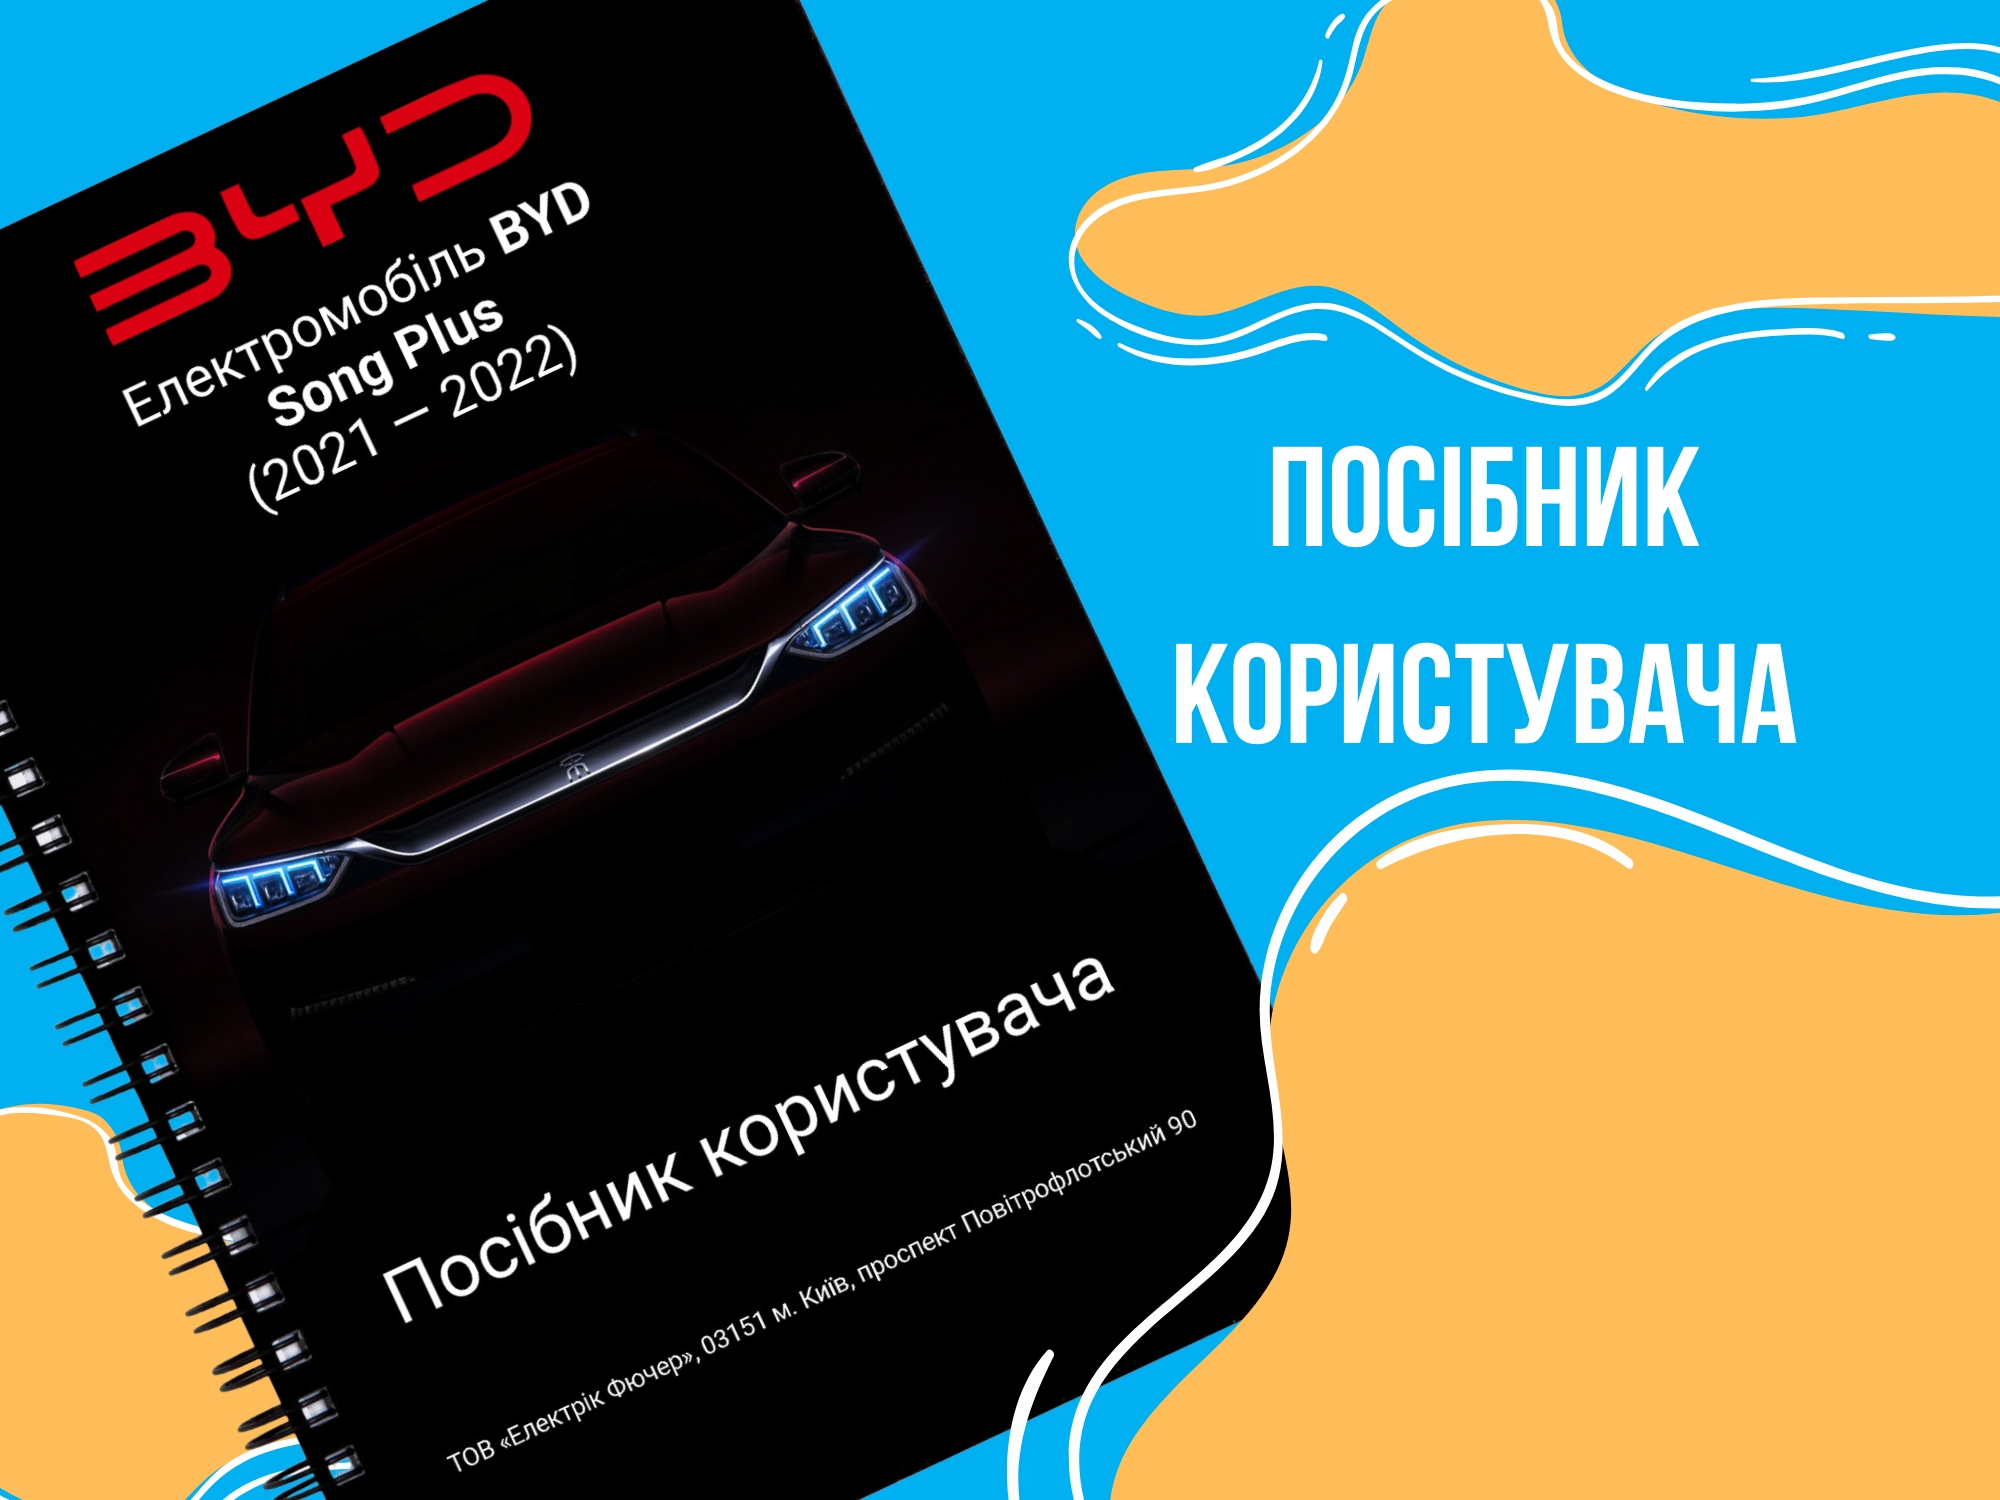 BYD Song Plus: Посібник користувача українською 🇺🇦 електромобілем, що робить експлуатацію простішою та безпечнішою